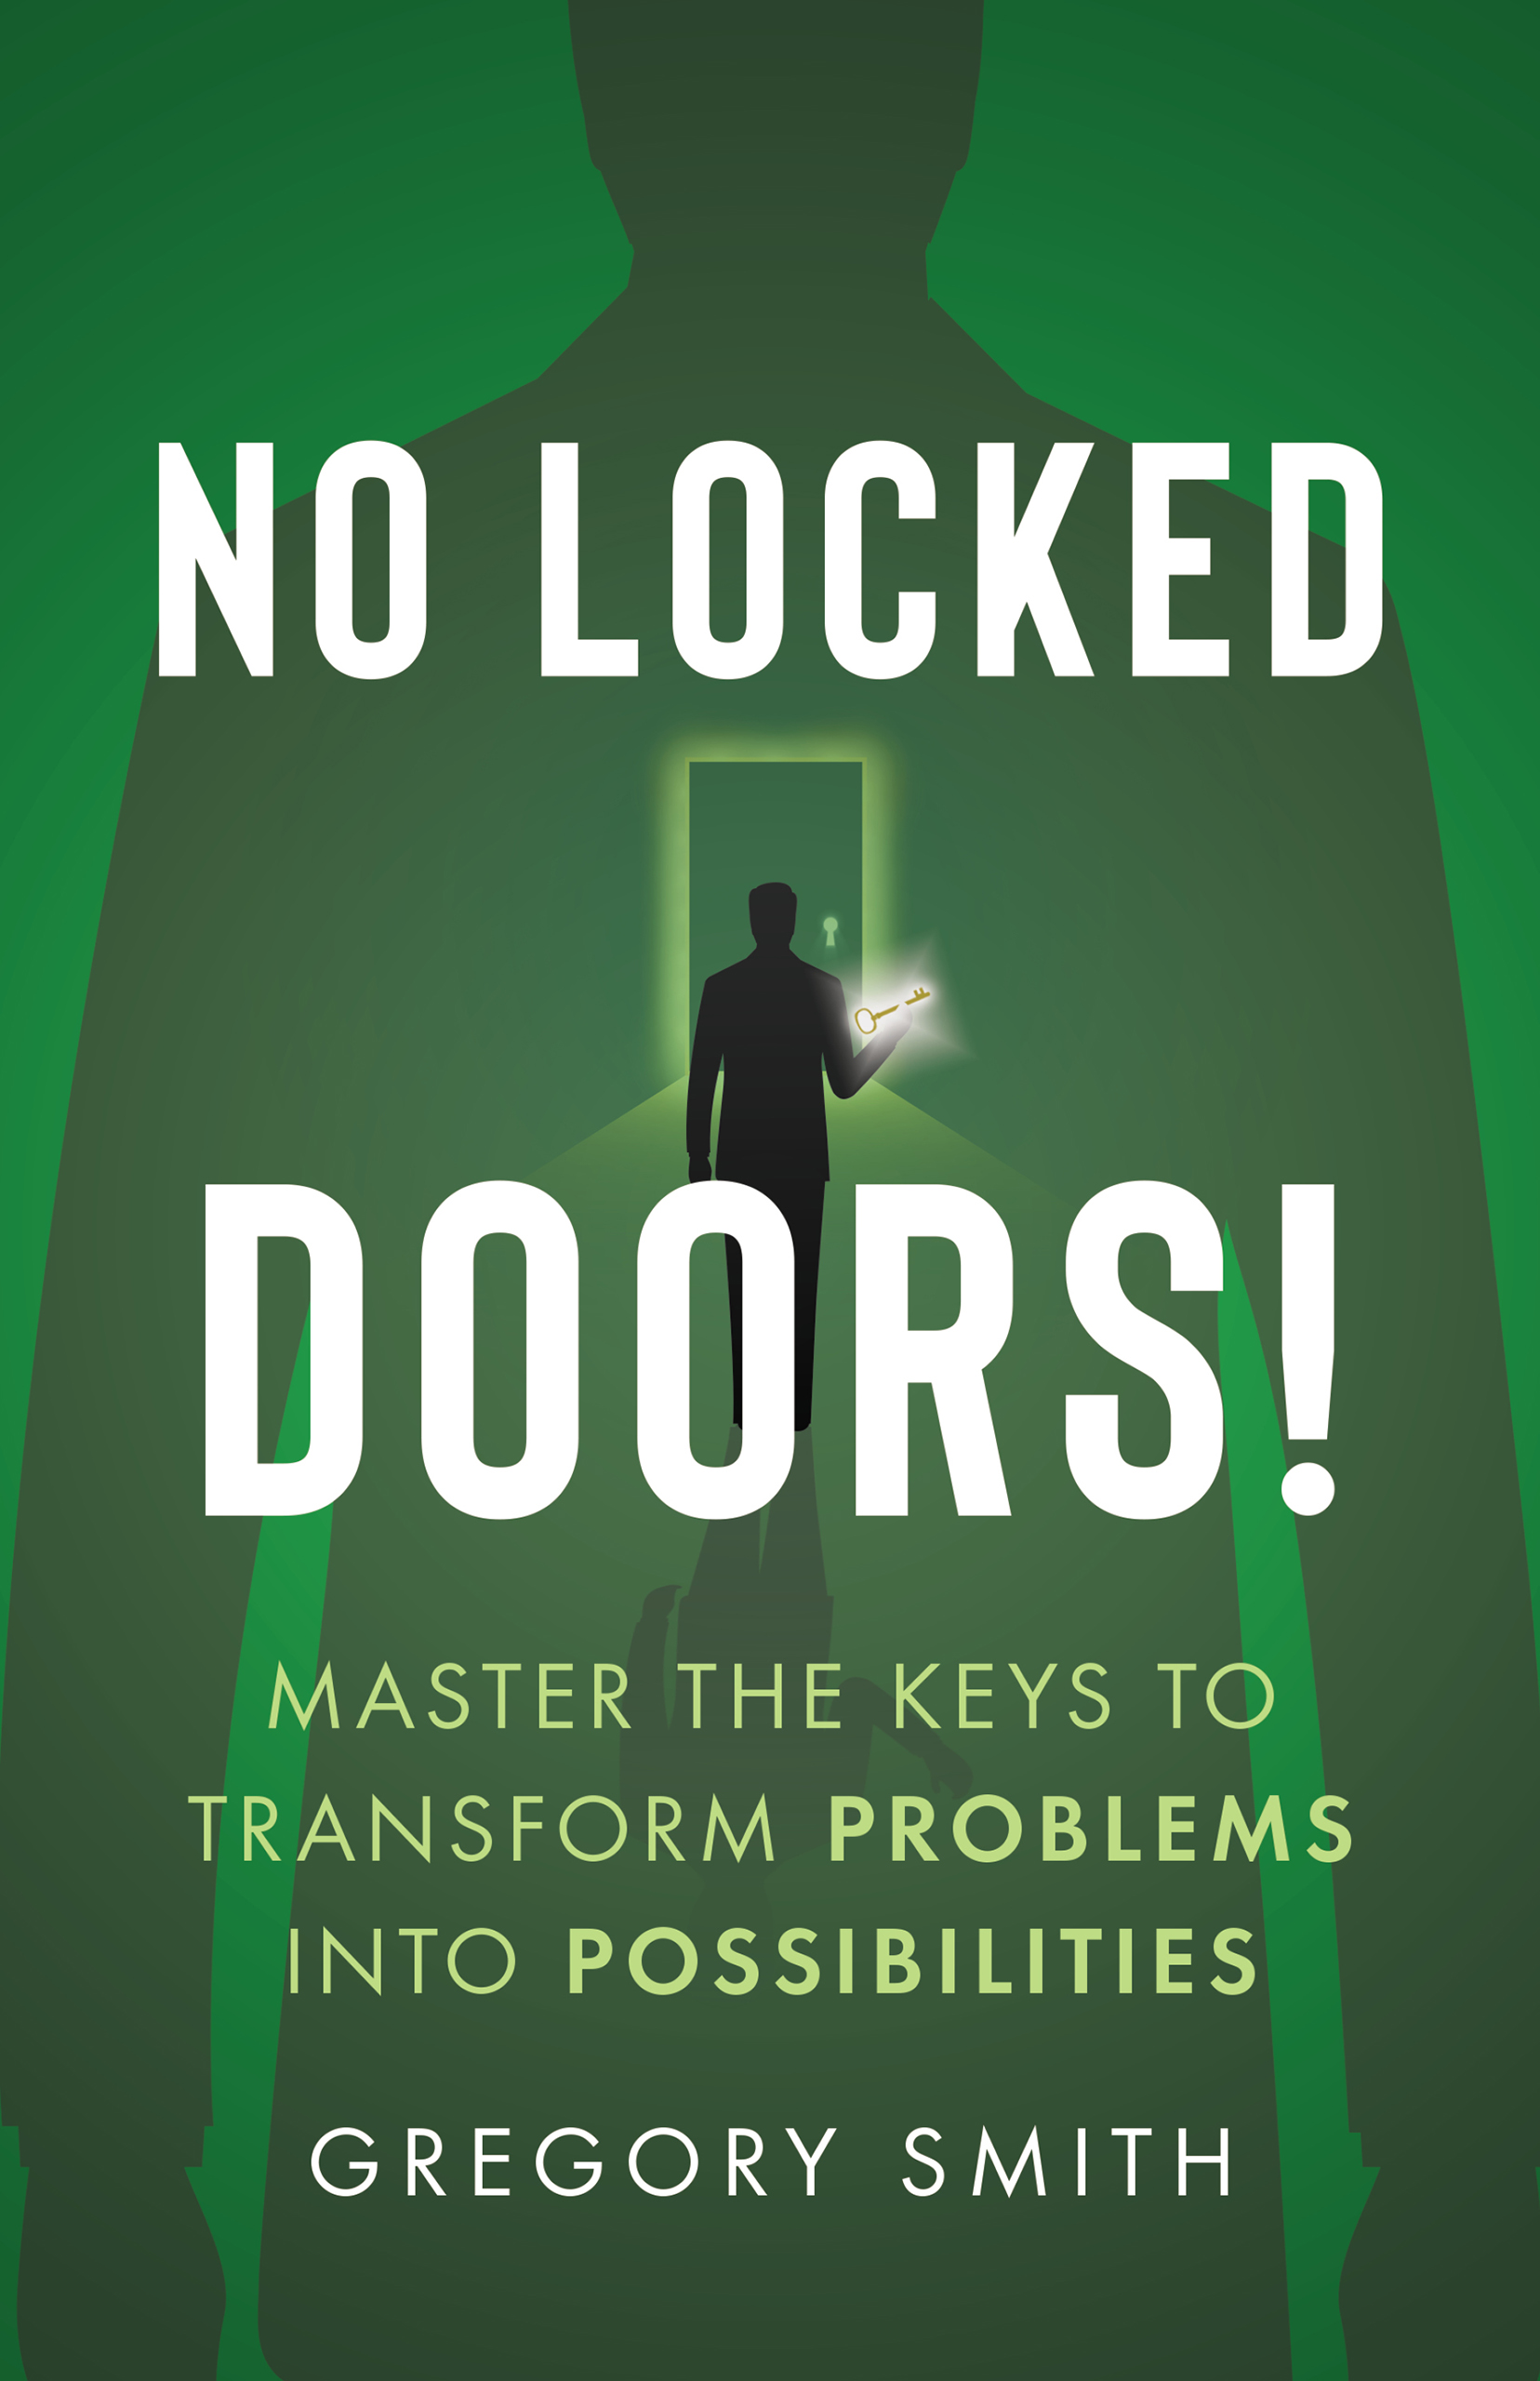 No Locked Doors!